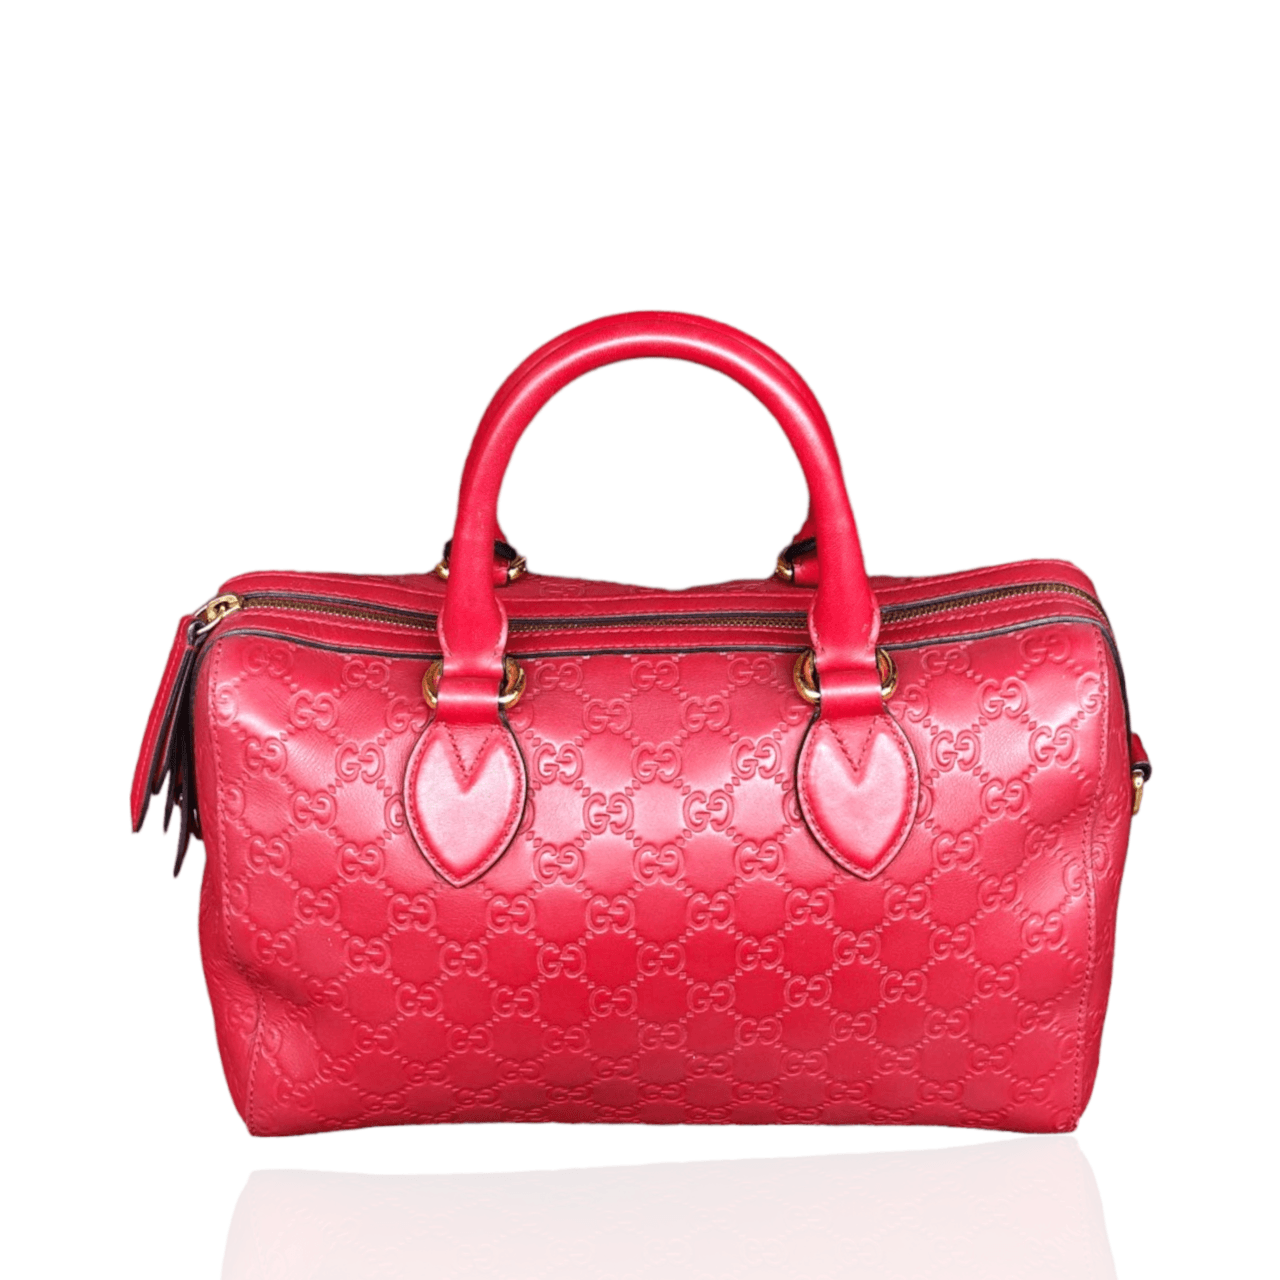 Gucci Guccisima Boston Red Shoulder Bag